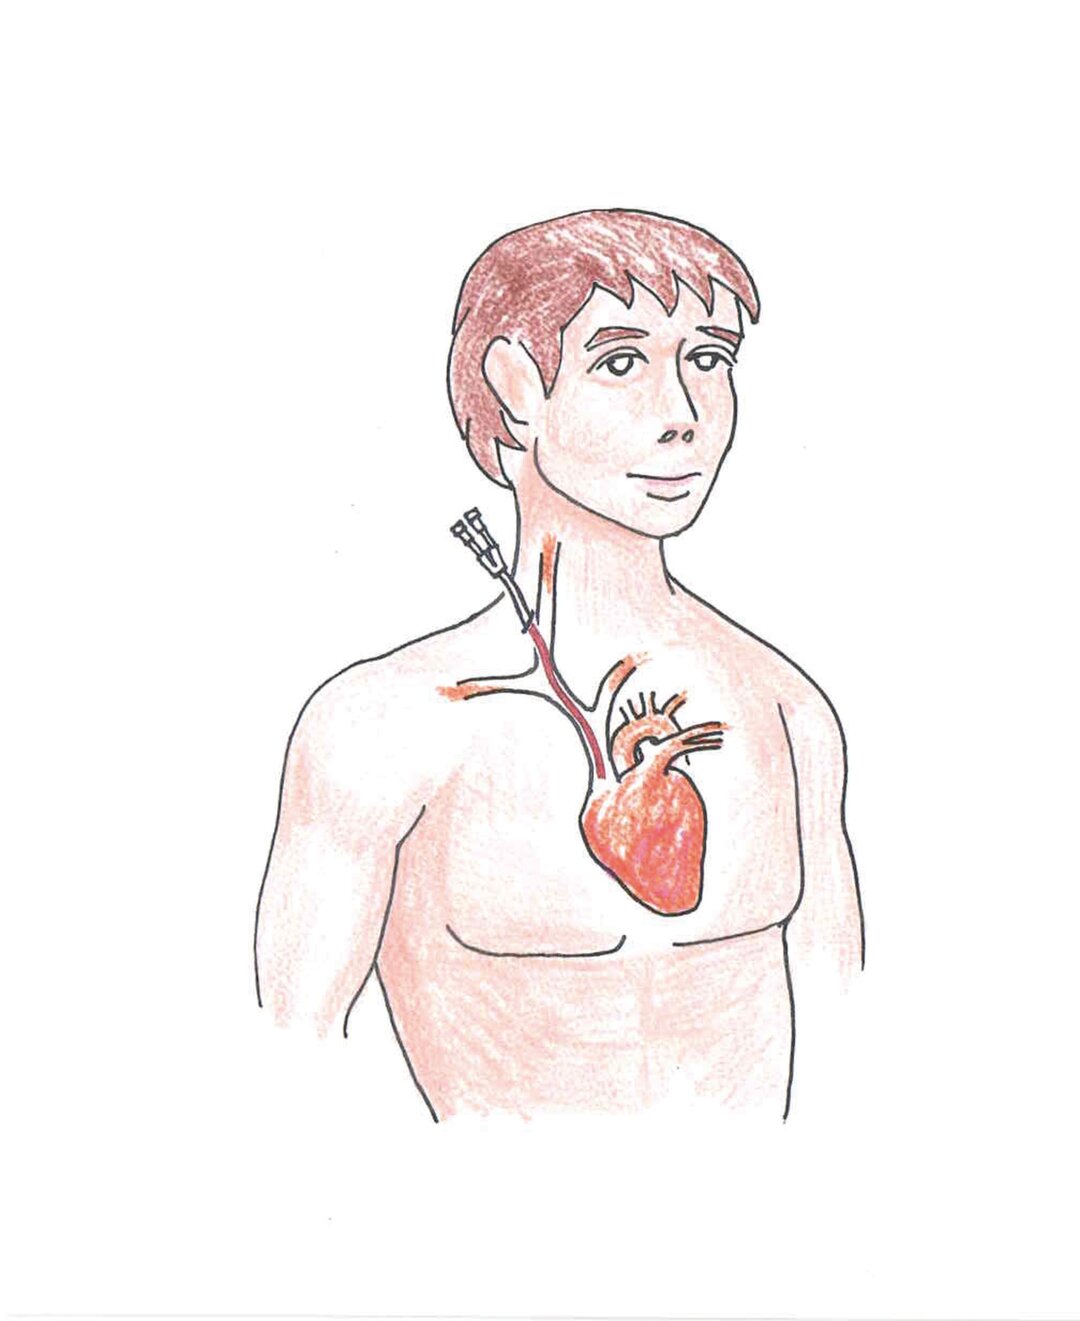 En tegning af en patient med midlertidigt dialysekateter.